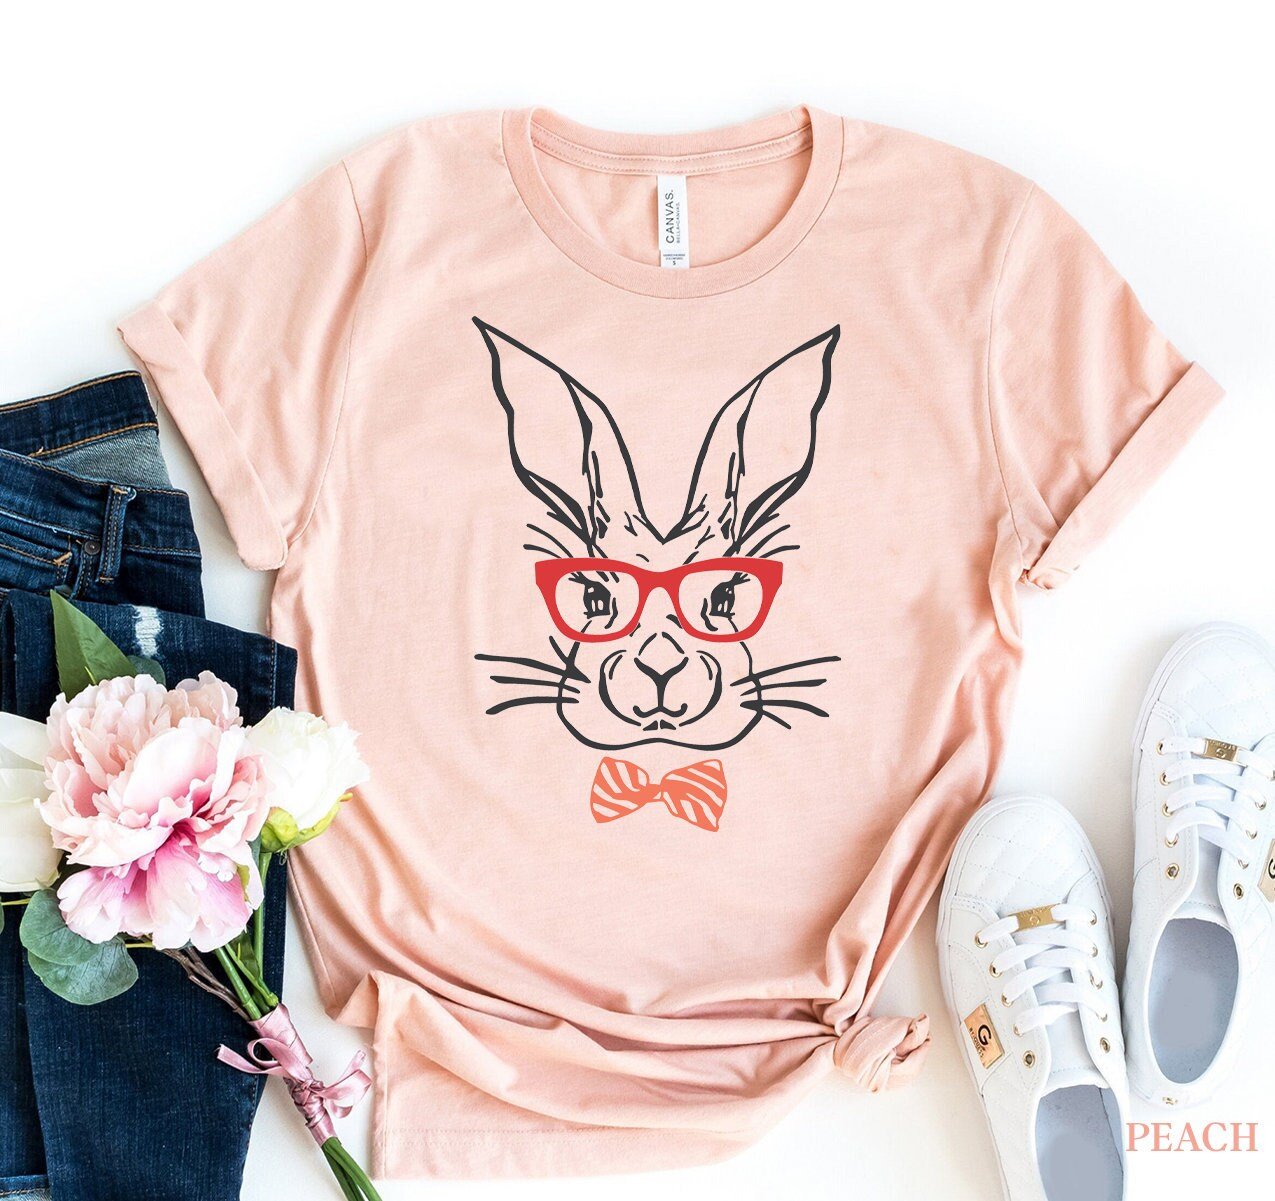 Rabbit Shirt, Rabbit Mom T-Shirt, Funny Rabbit Shirt, Cute Rabbit Tshirt, Farm T-Shirt, Bunny Shirts, Rabbit Lover Tee, Gift For Rabbit Mom